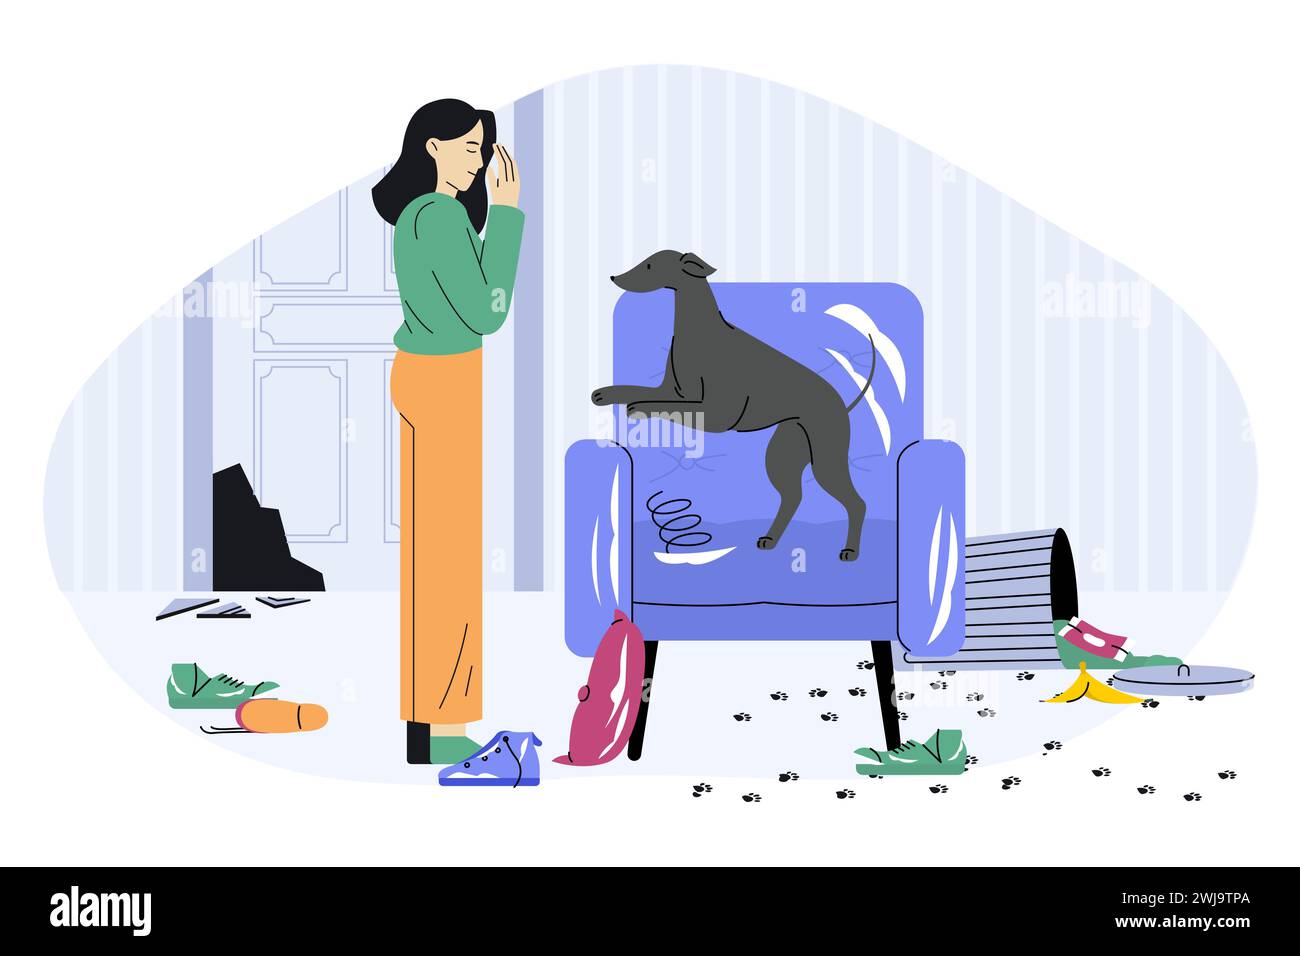 Problem des Hundeverhaltens. Cartoon Naughty Hündchen zerstören Haus, Haustier-Chaos und Chaos, freche Tierfigur spielt und zerstört Möbel Stock Vektor